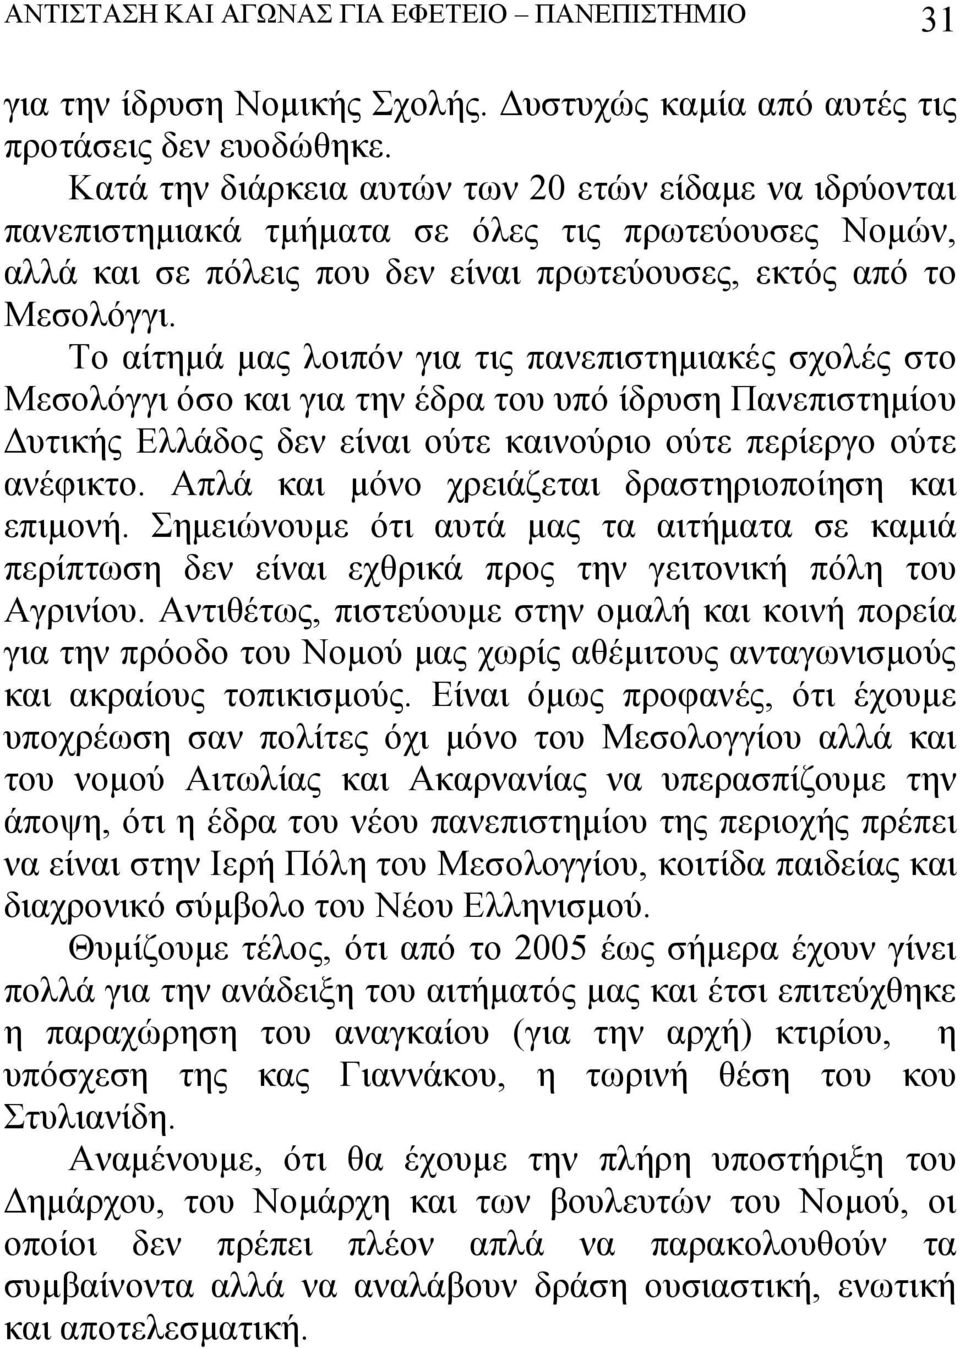 Το αίτημά μας λοιπόν για τις πανεπιστημιακές σχολές στο Μεσολόγγι όσο και για την έδρα του υπό ίδρυση Πανεπιστημίου Δυτικής Ελλάδος δεν είναι ούτε καινούριο ούτε περίεργο ούτε ανέφικτο.